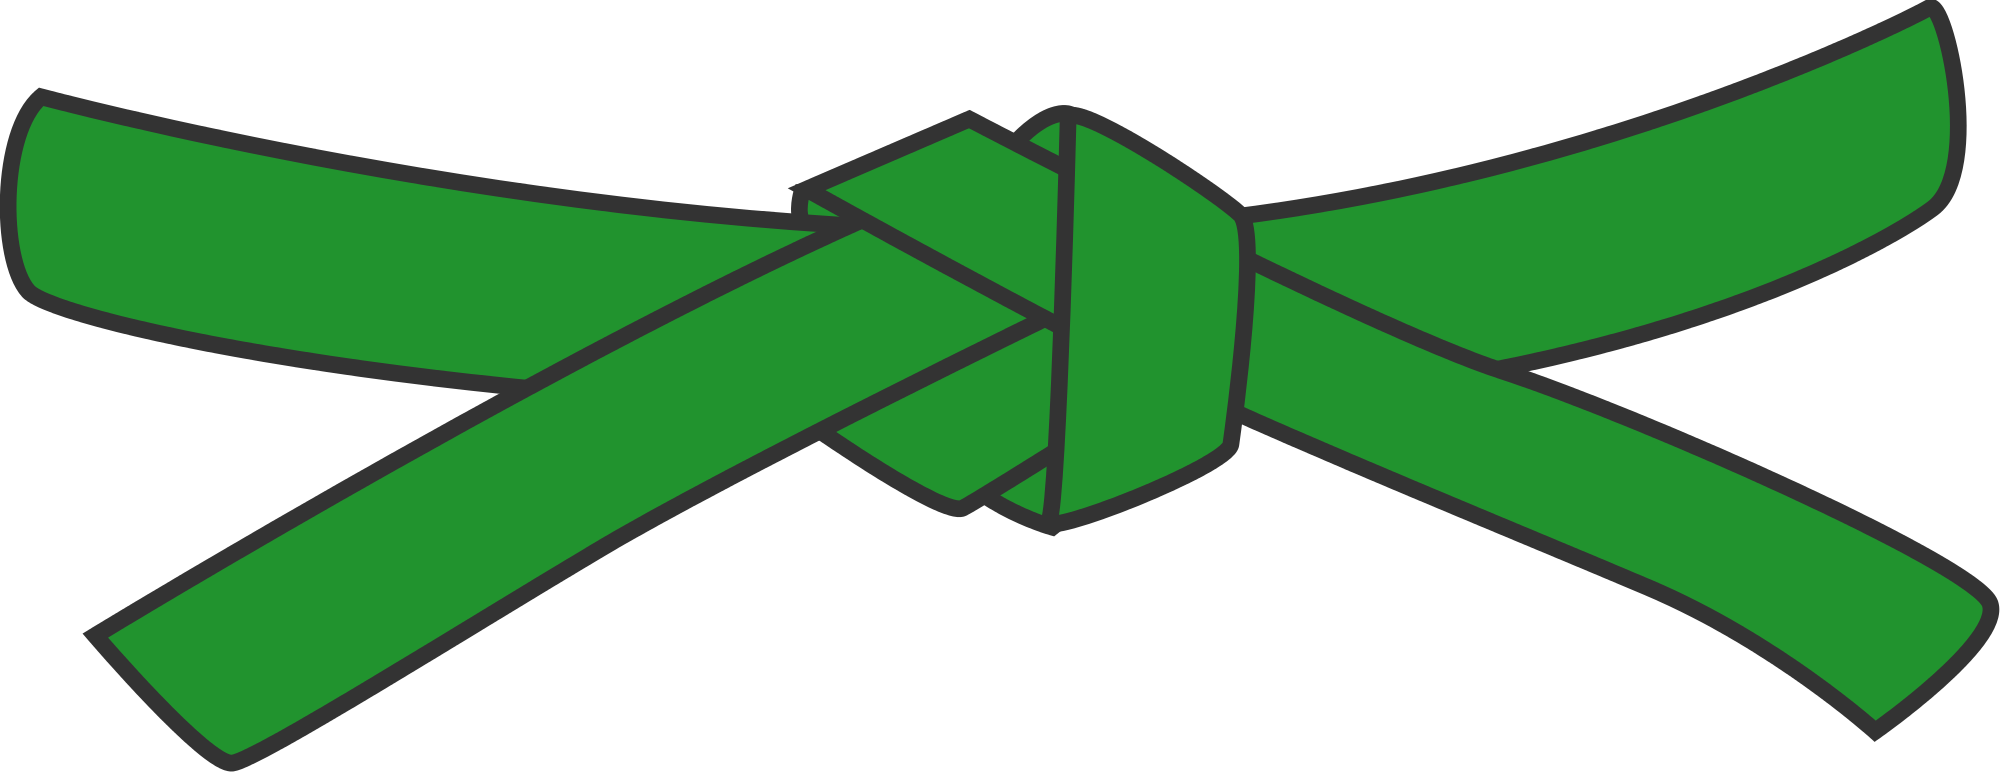 Image Result For Green Belt - Martial Arts Green Belt (2000x772)